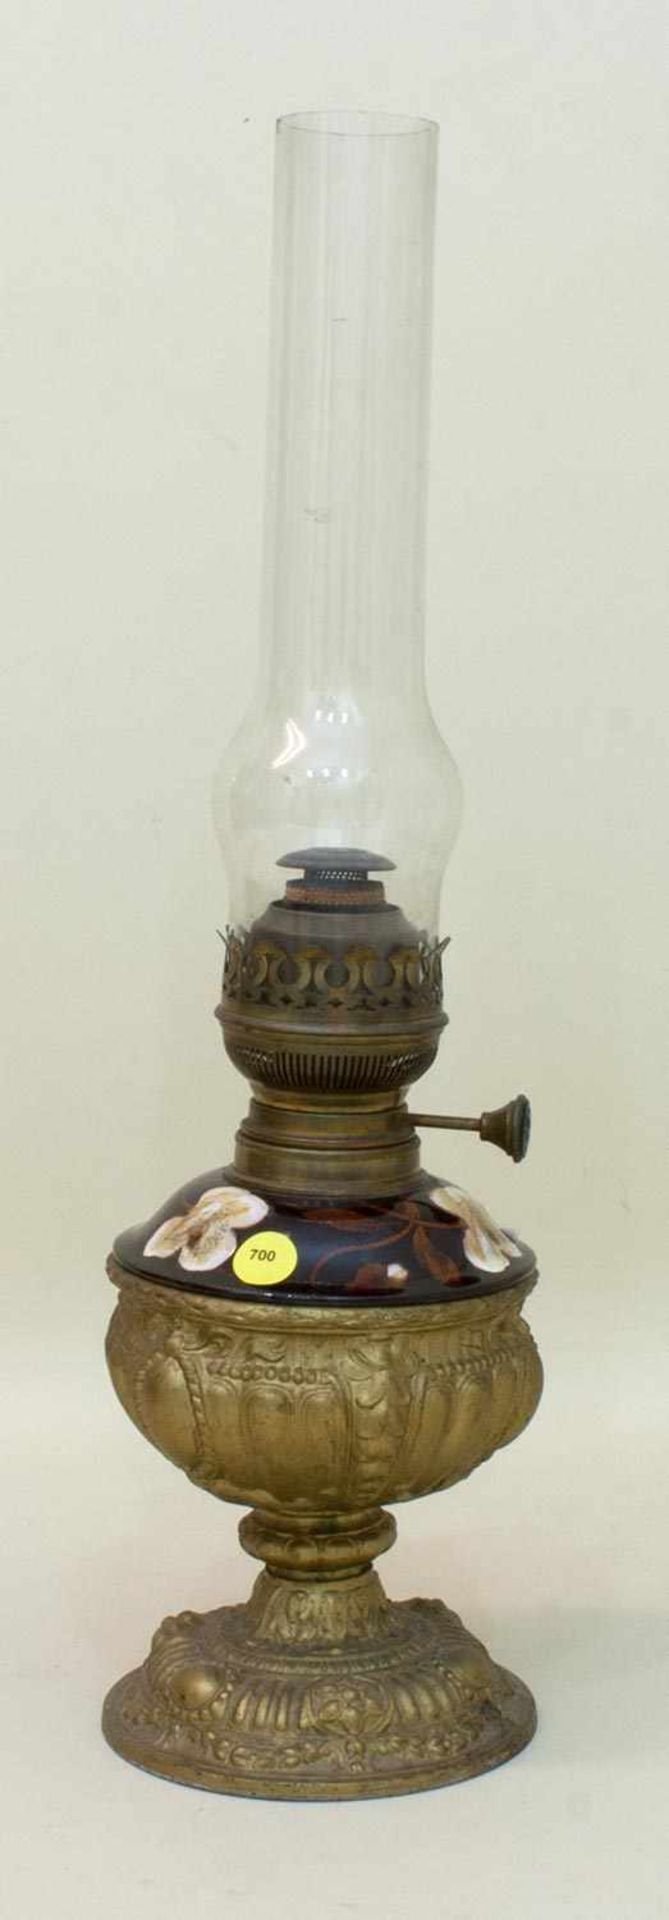 Petroleum Lampe Gründerzeit um 1890, bronzierter Weißmetallfuß mit Fayenceeinsatz, H 51 cm